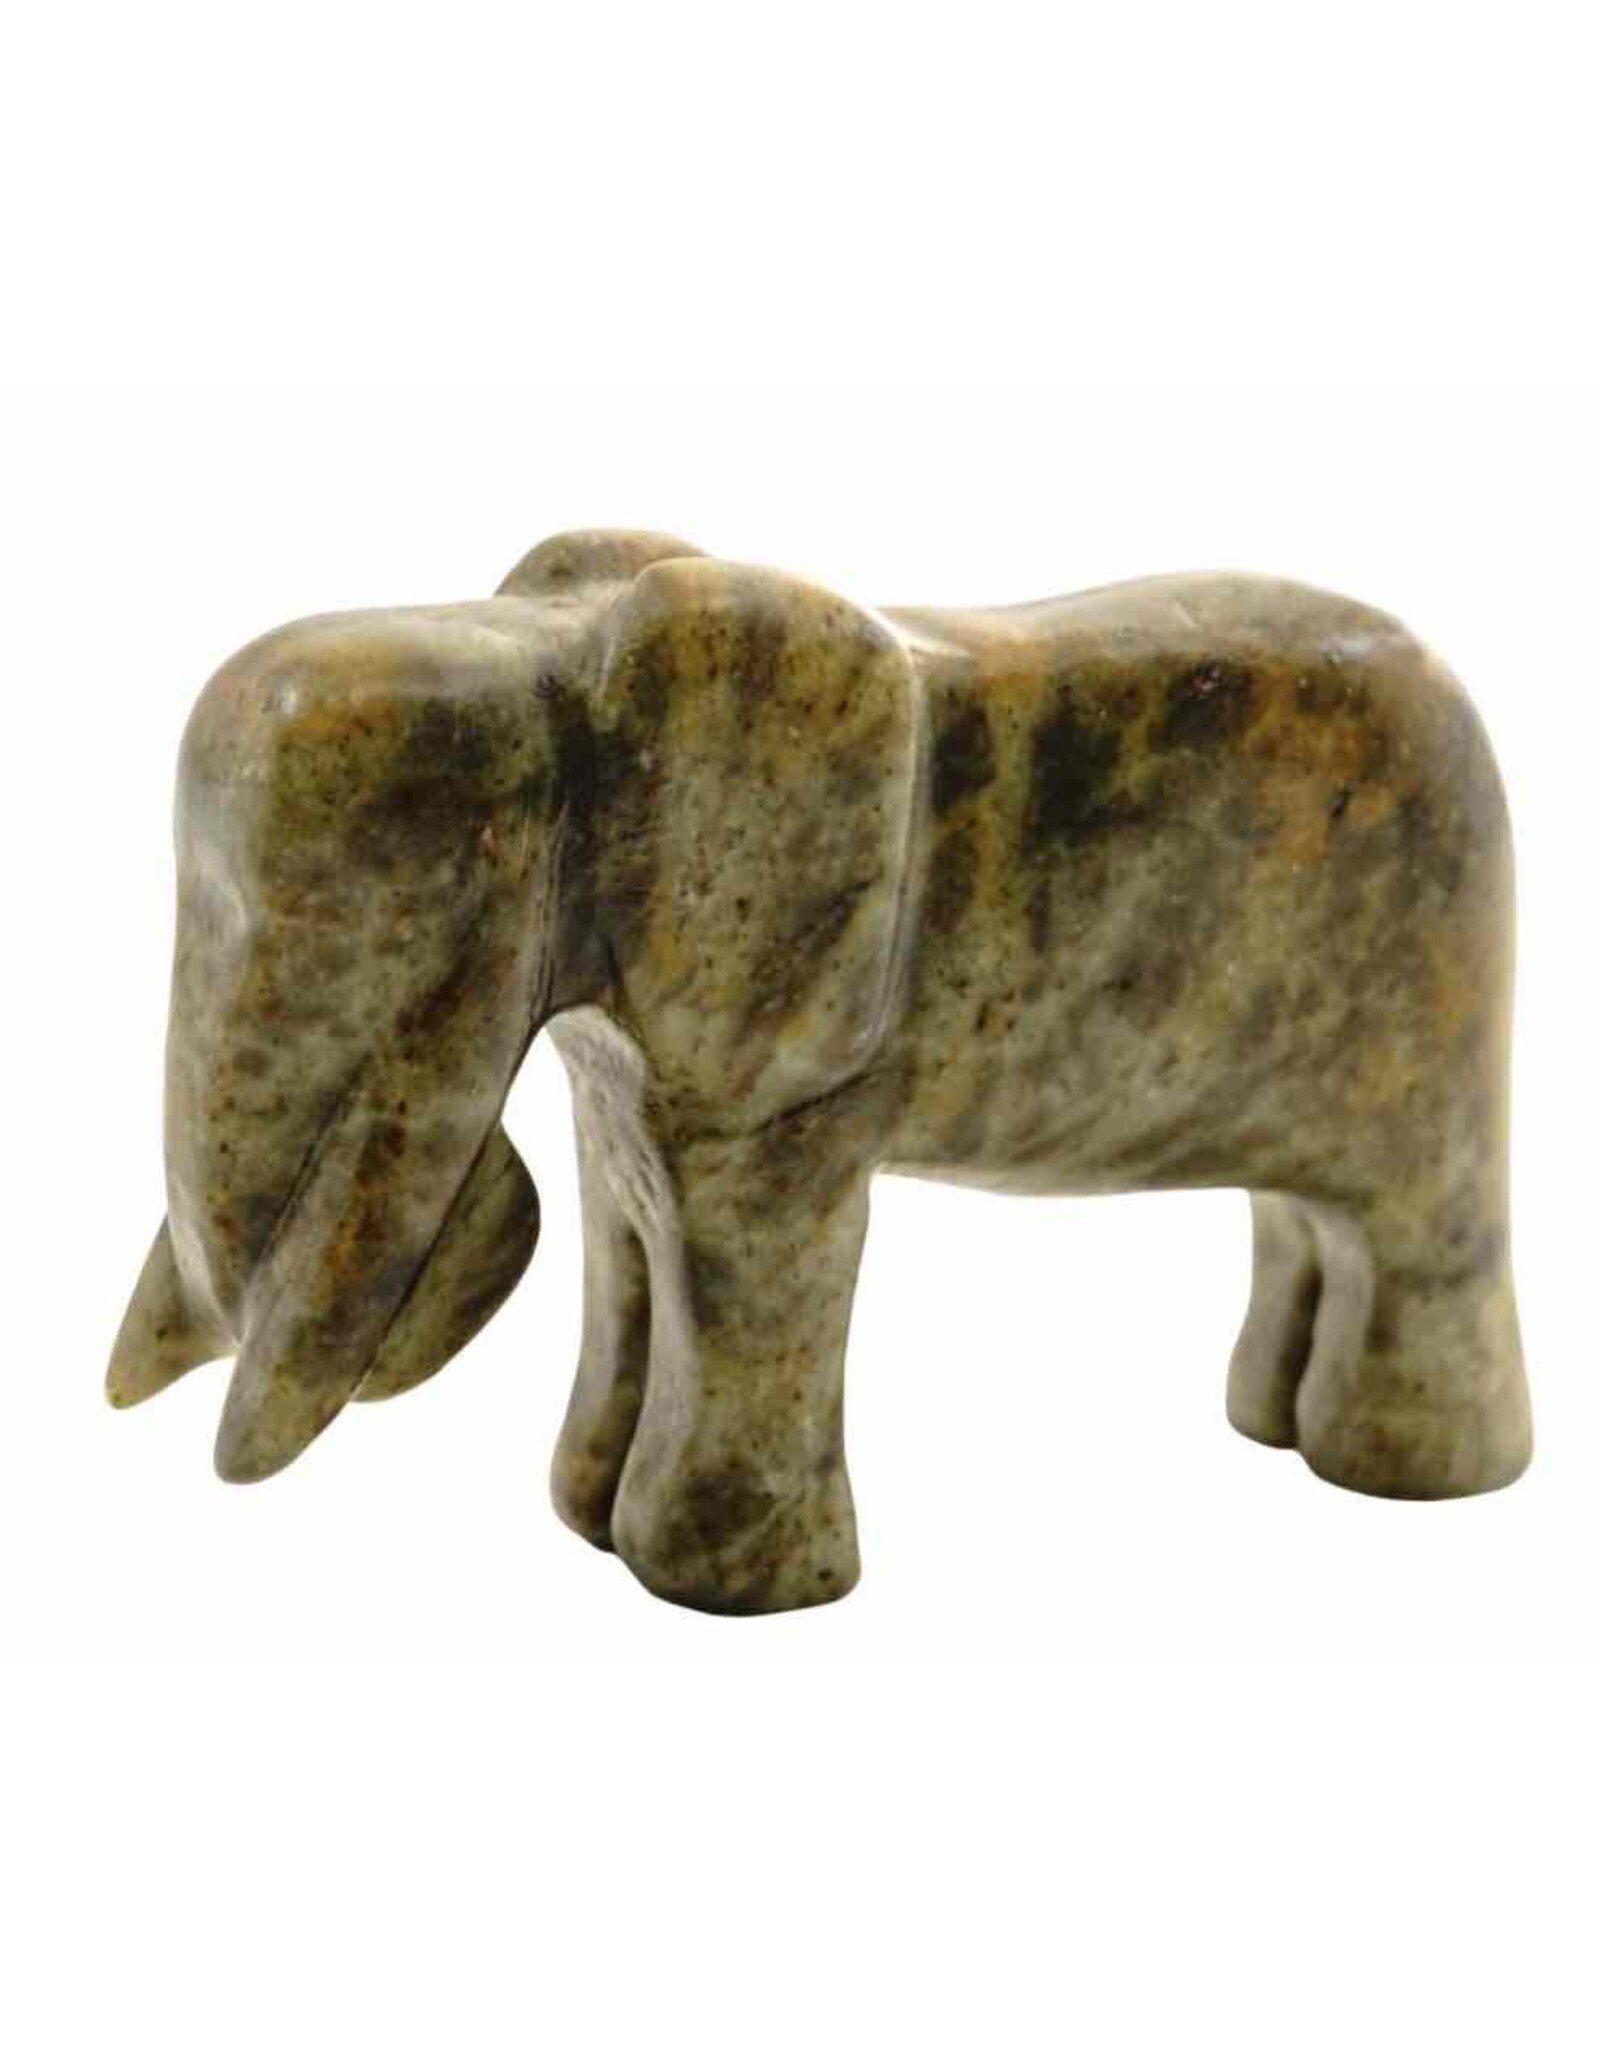 Soapstone DIY Carving Kit - Elephant